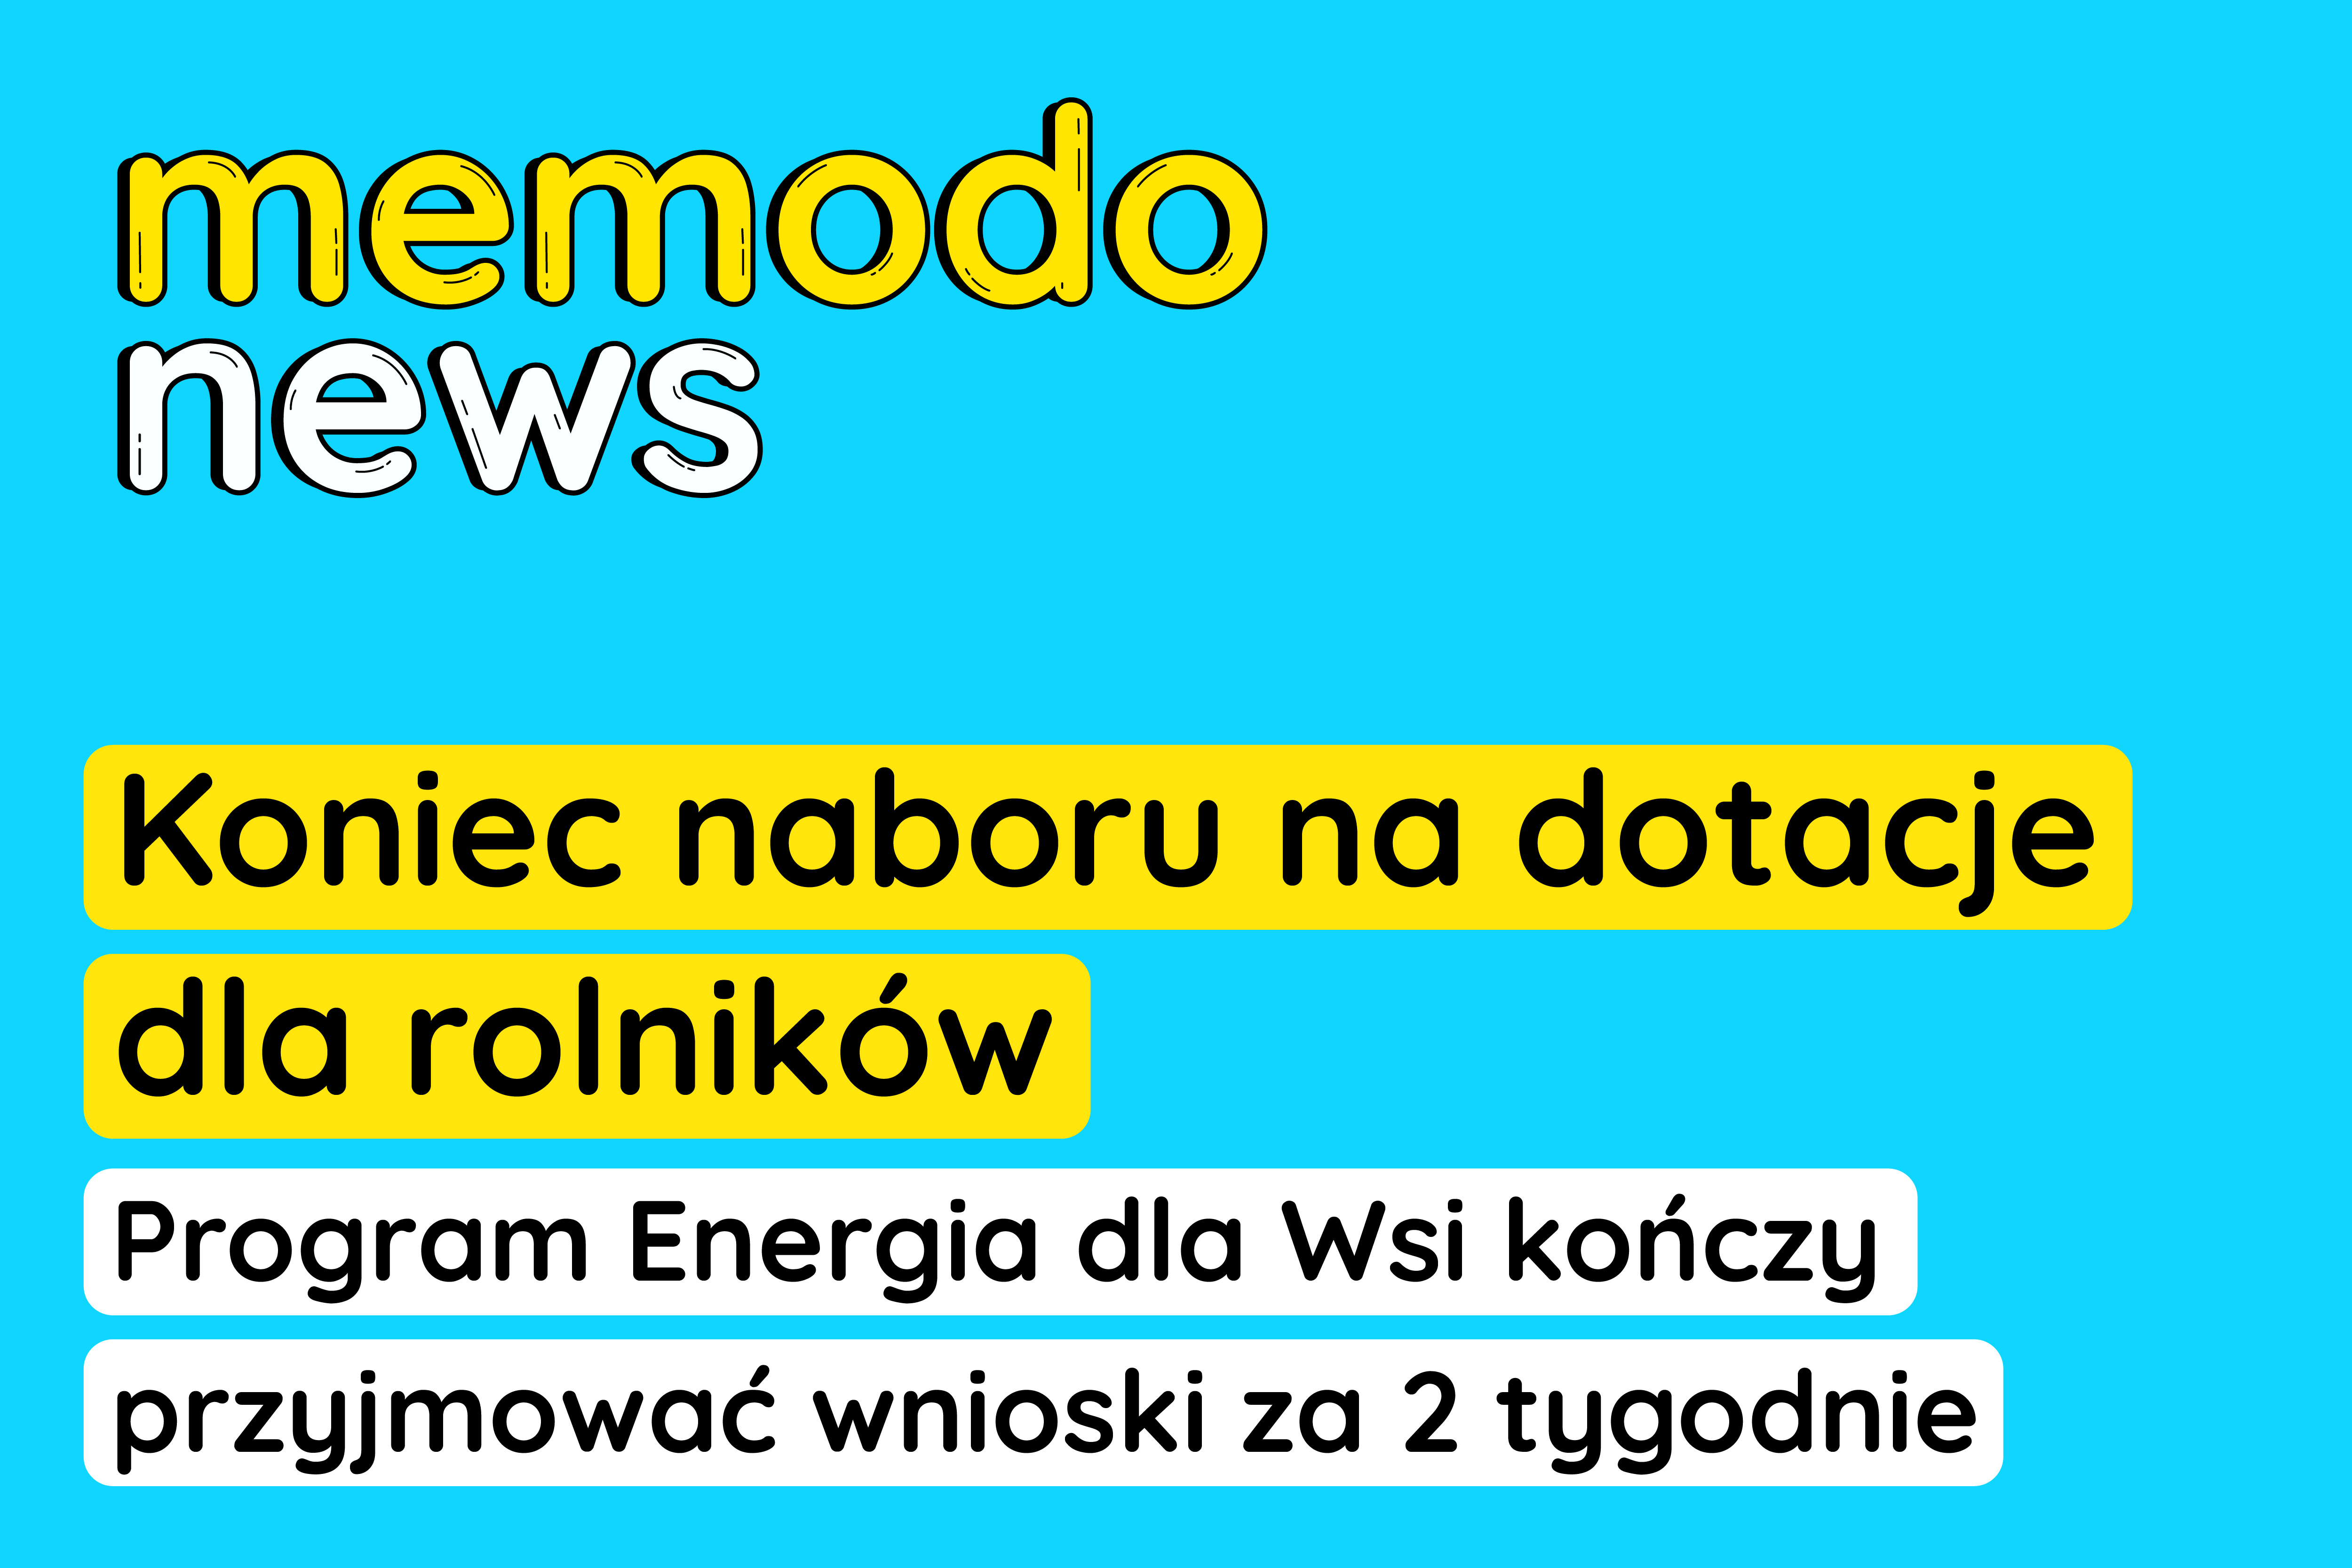 Memodo News 16.02